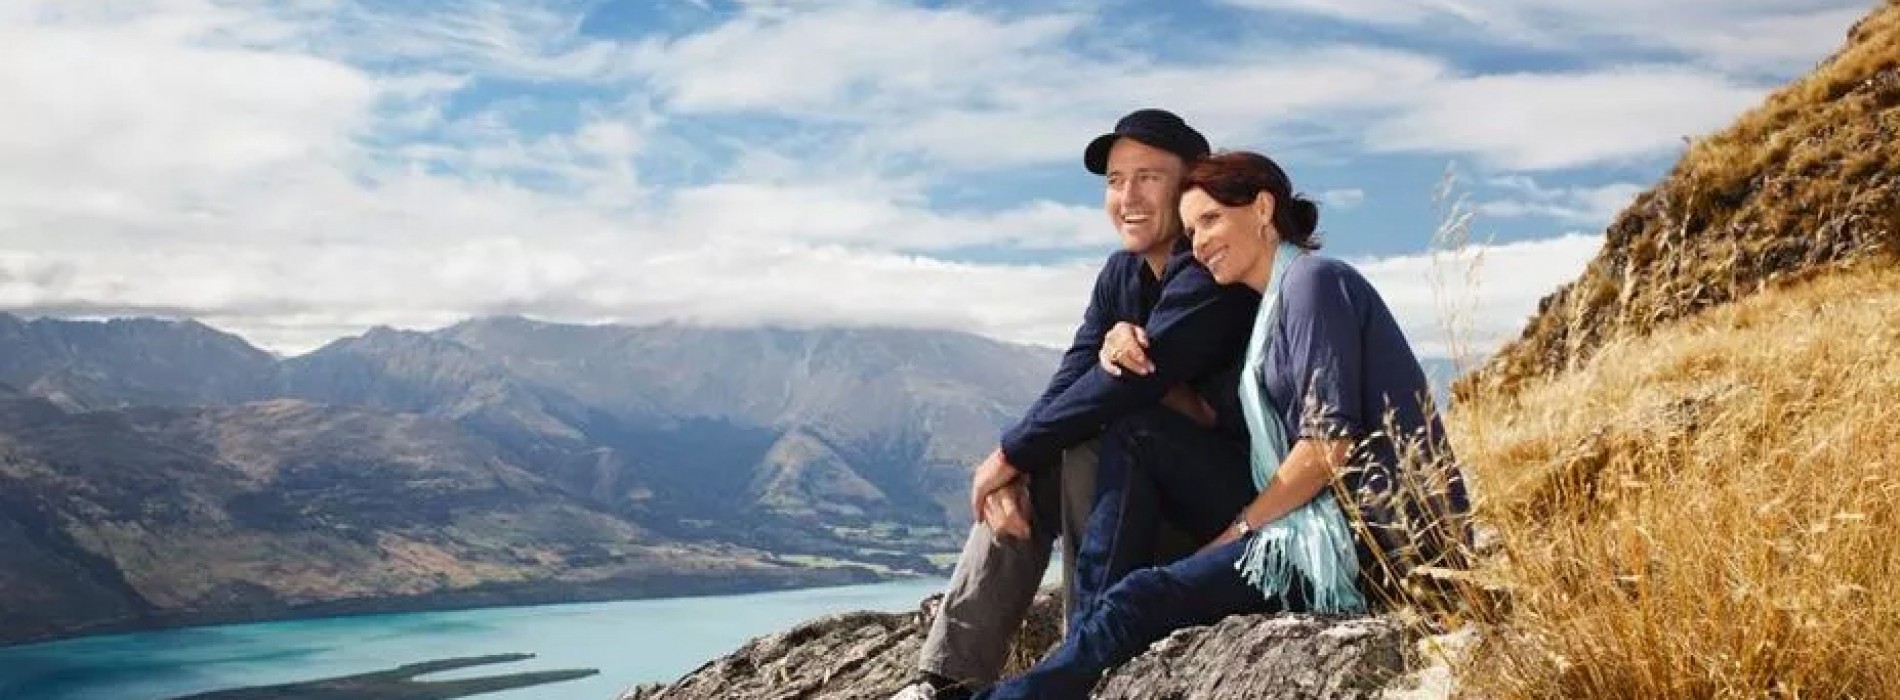 Romantic Adventures in New Zealand